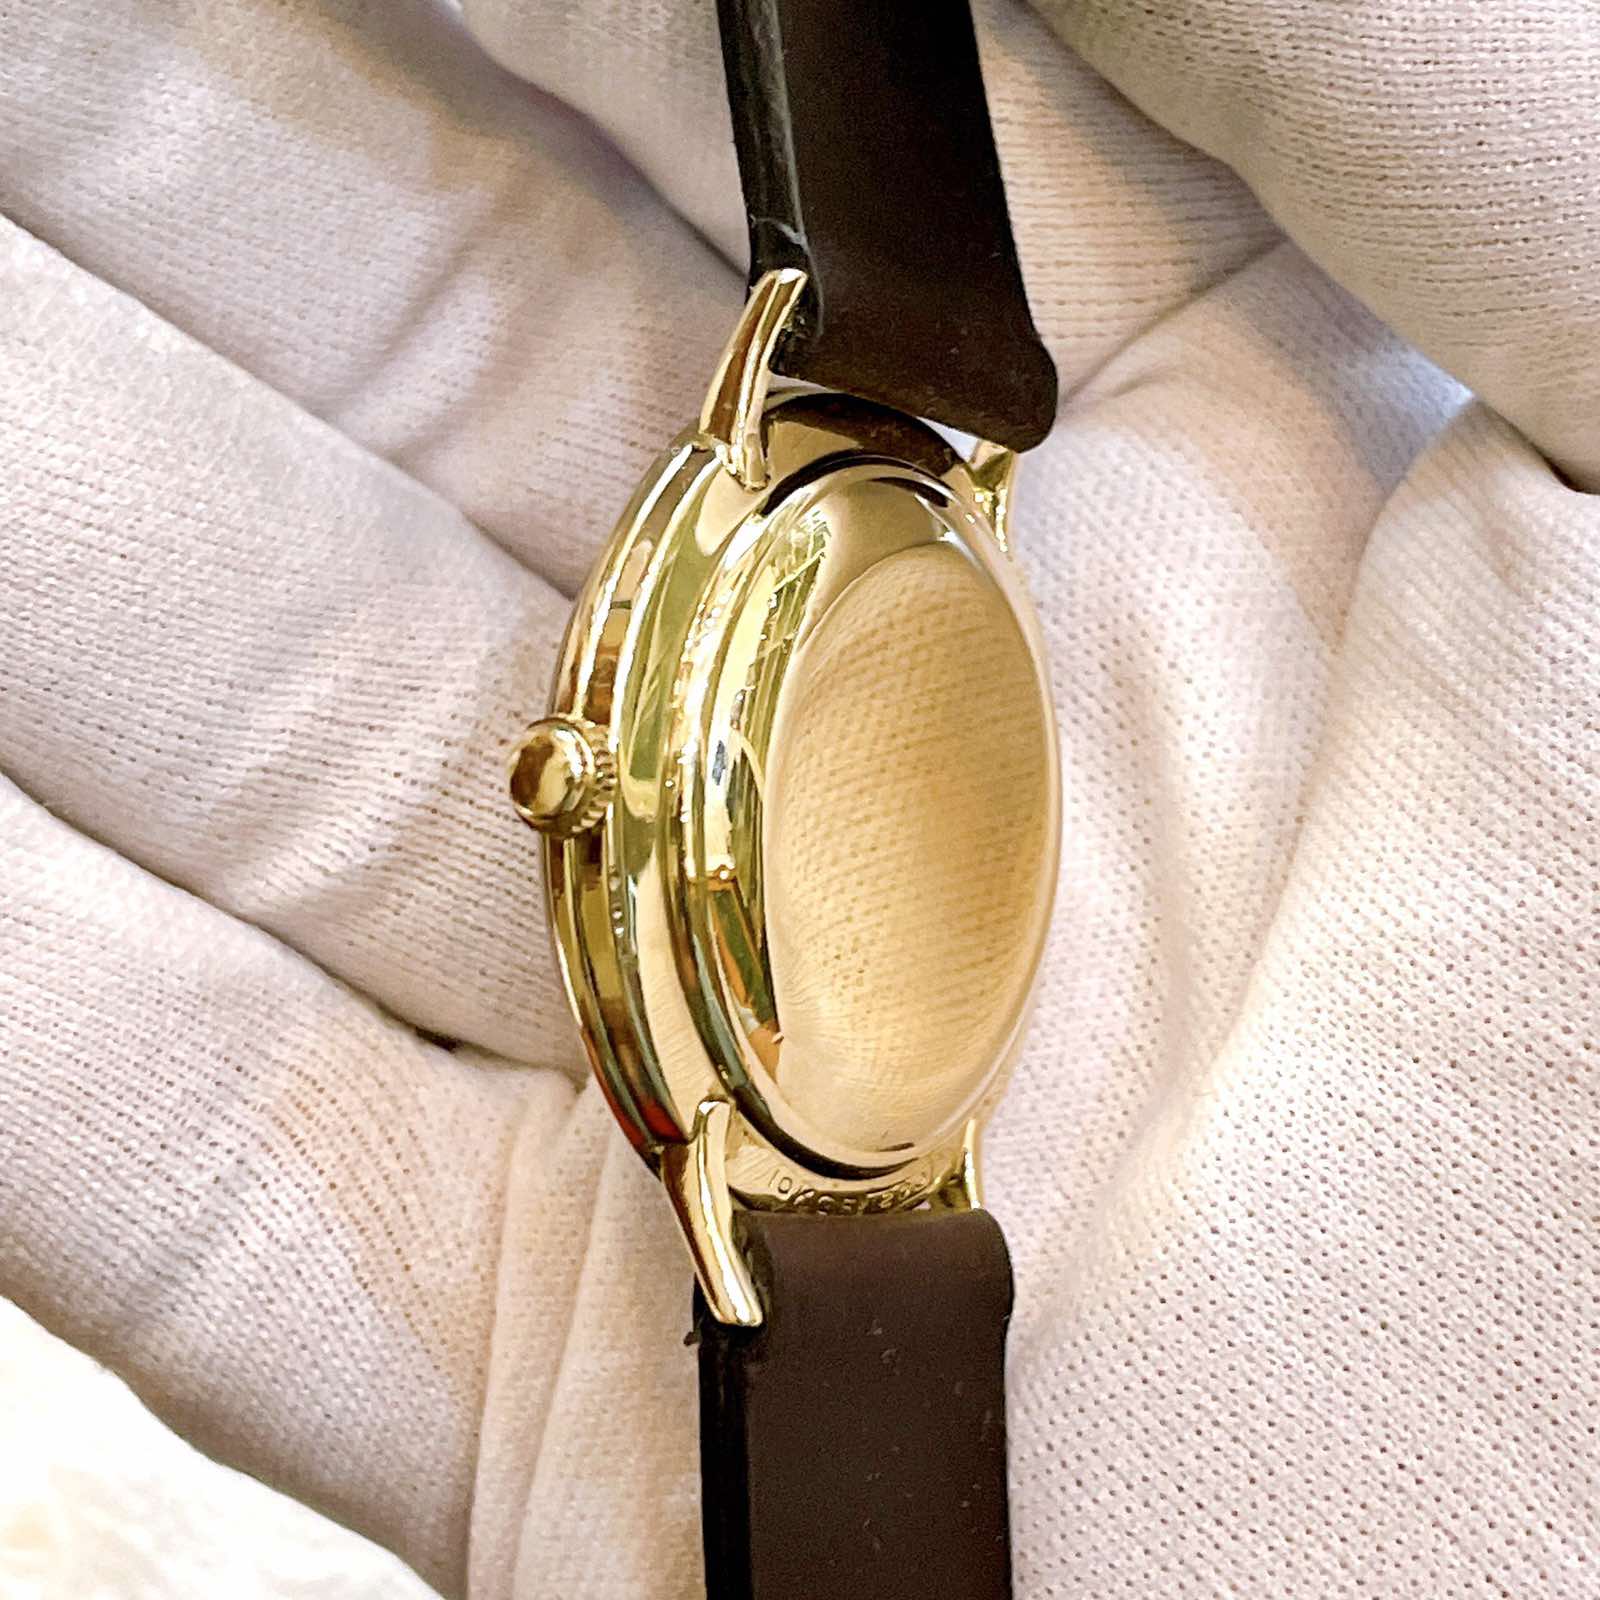 Đồng hồ cổ Longines kim đĩa đính xoàn automatic bọc vàng toàn thân chính hãng Thụy Sỹ